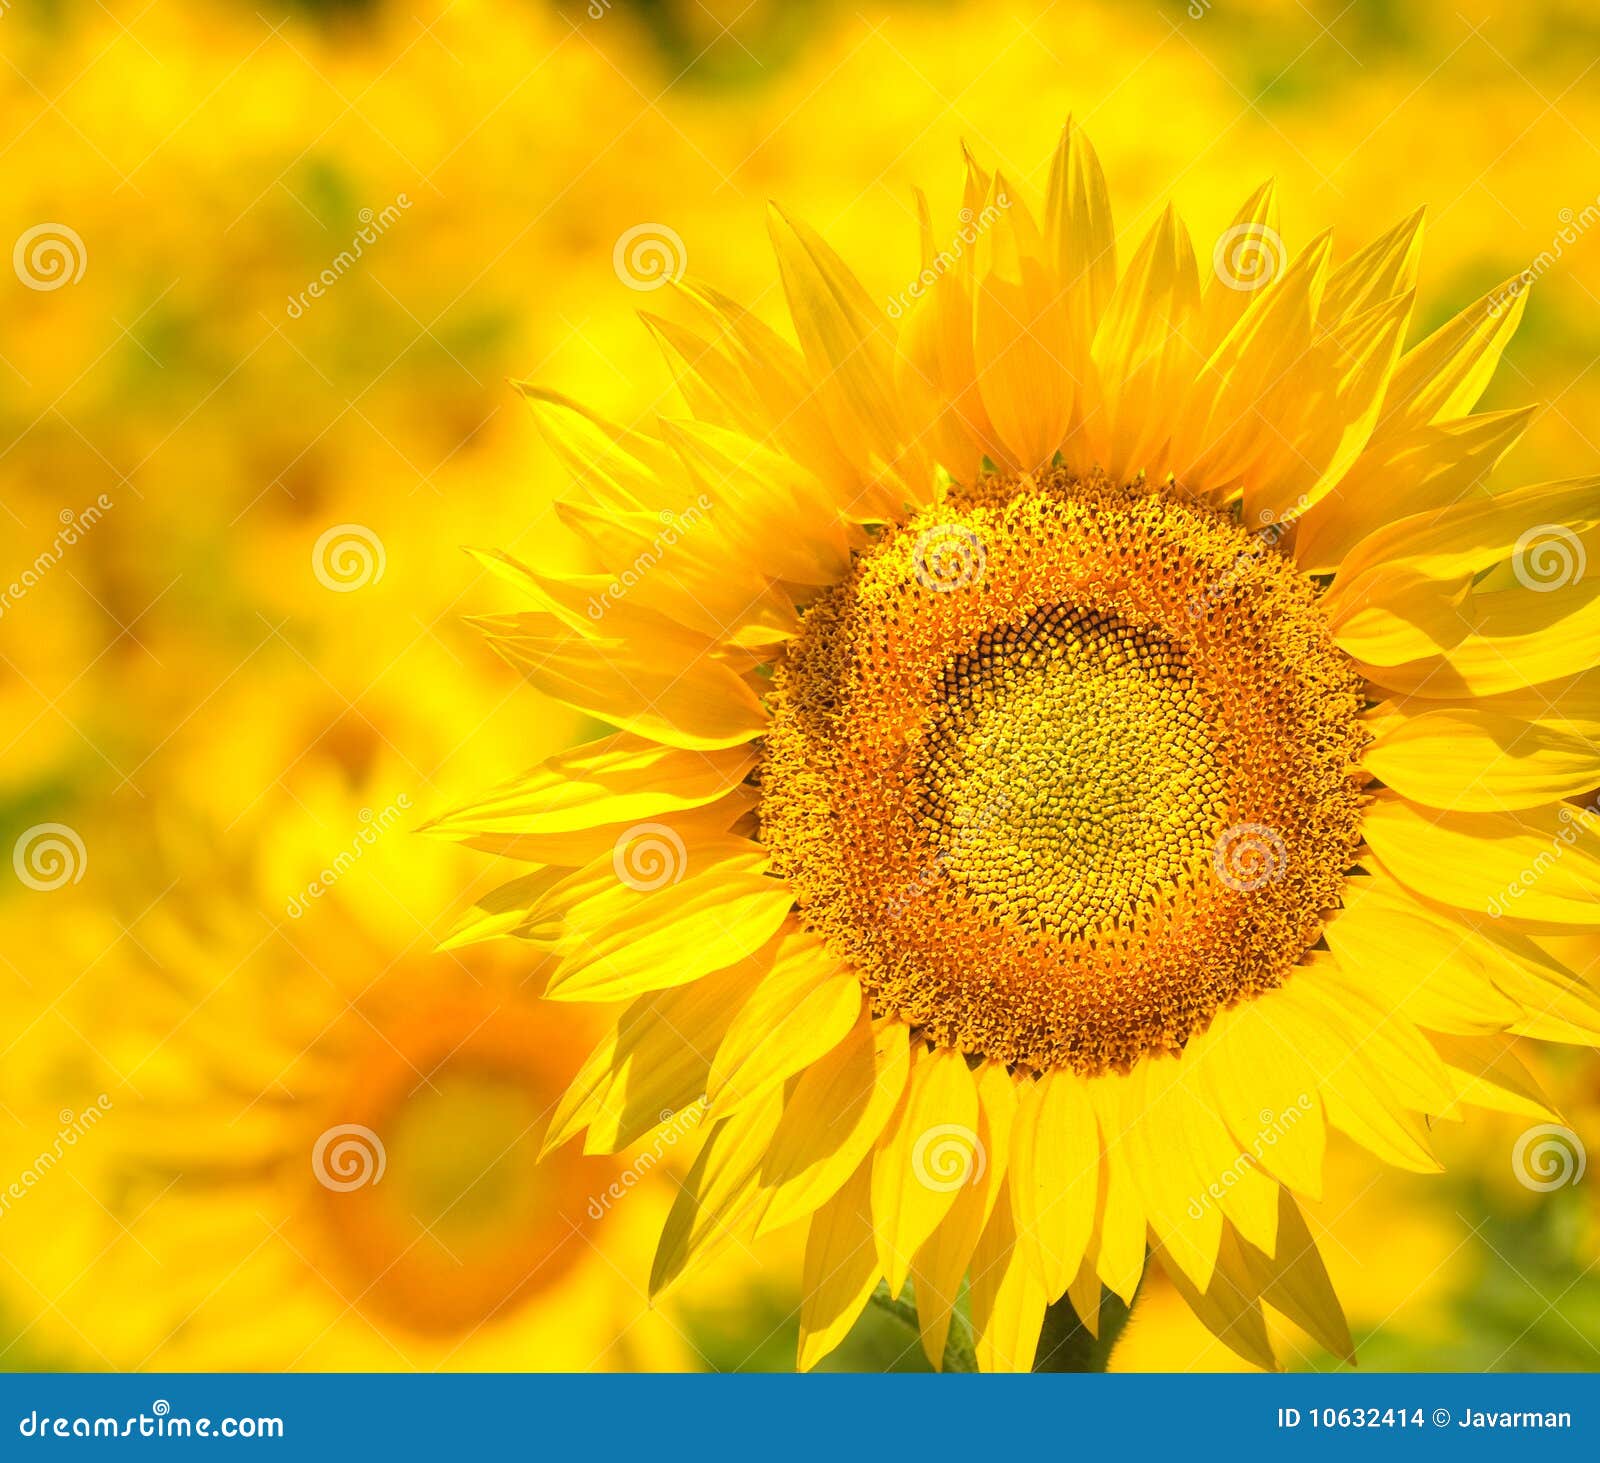 Golden Sunflower field, Provence, France, shallow focus